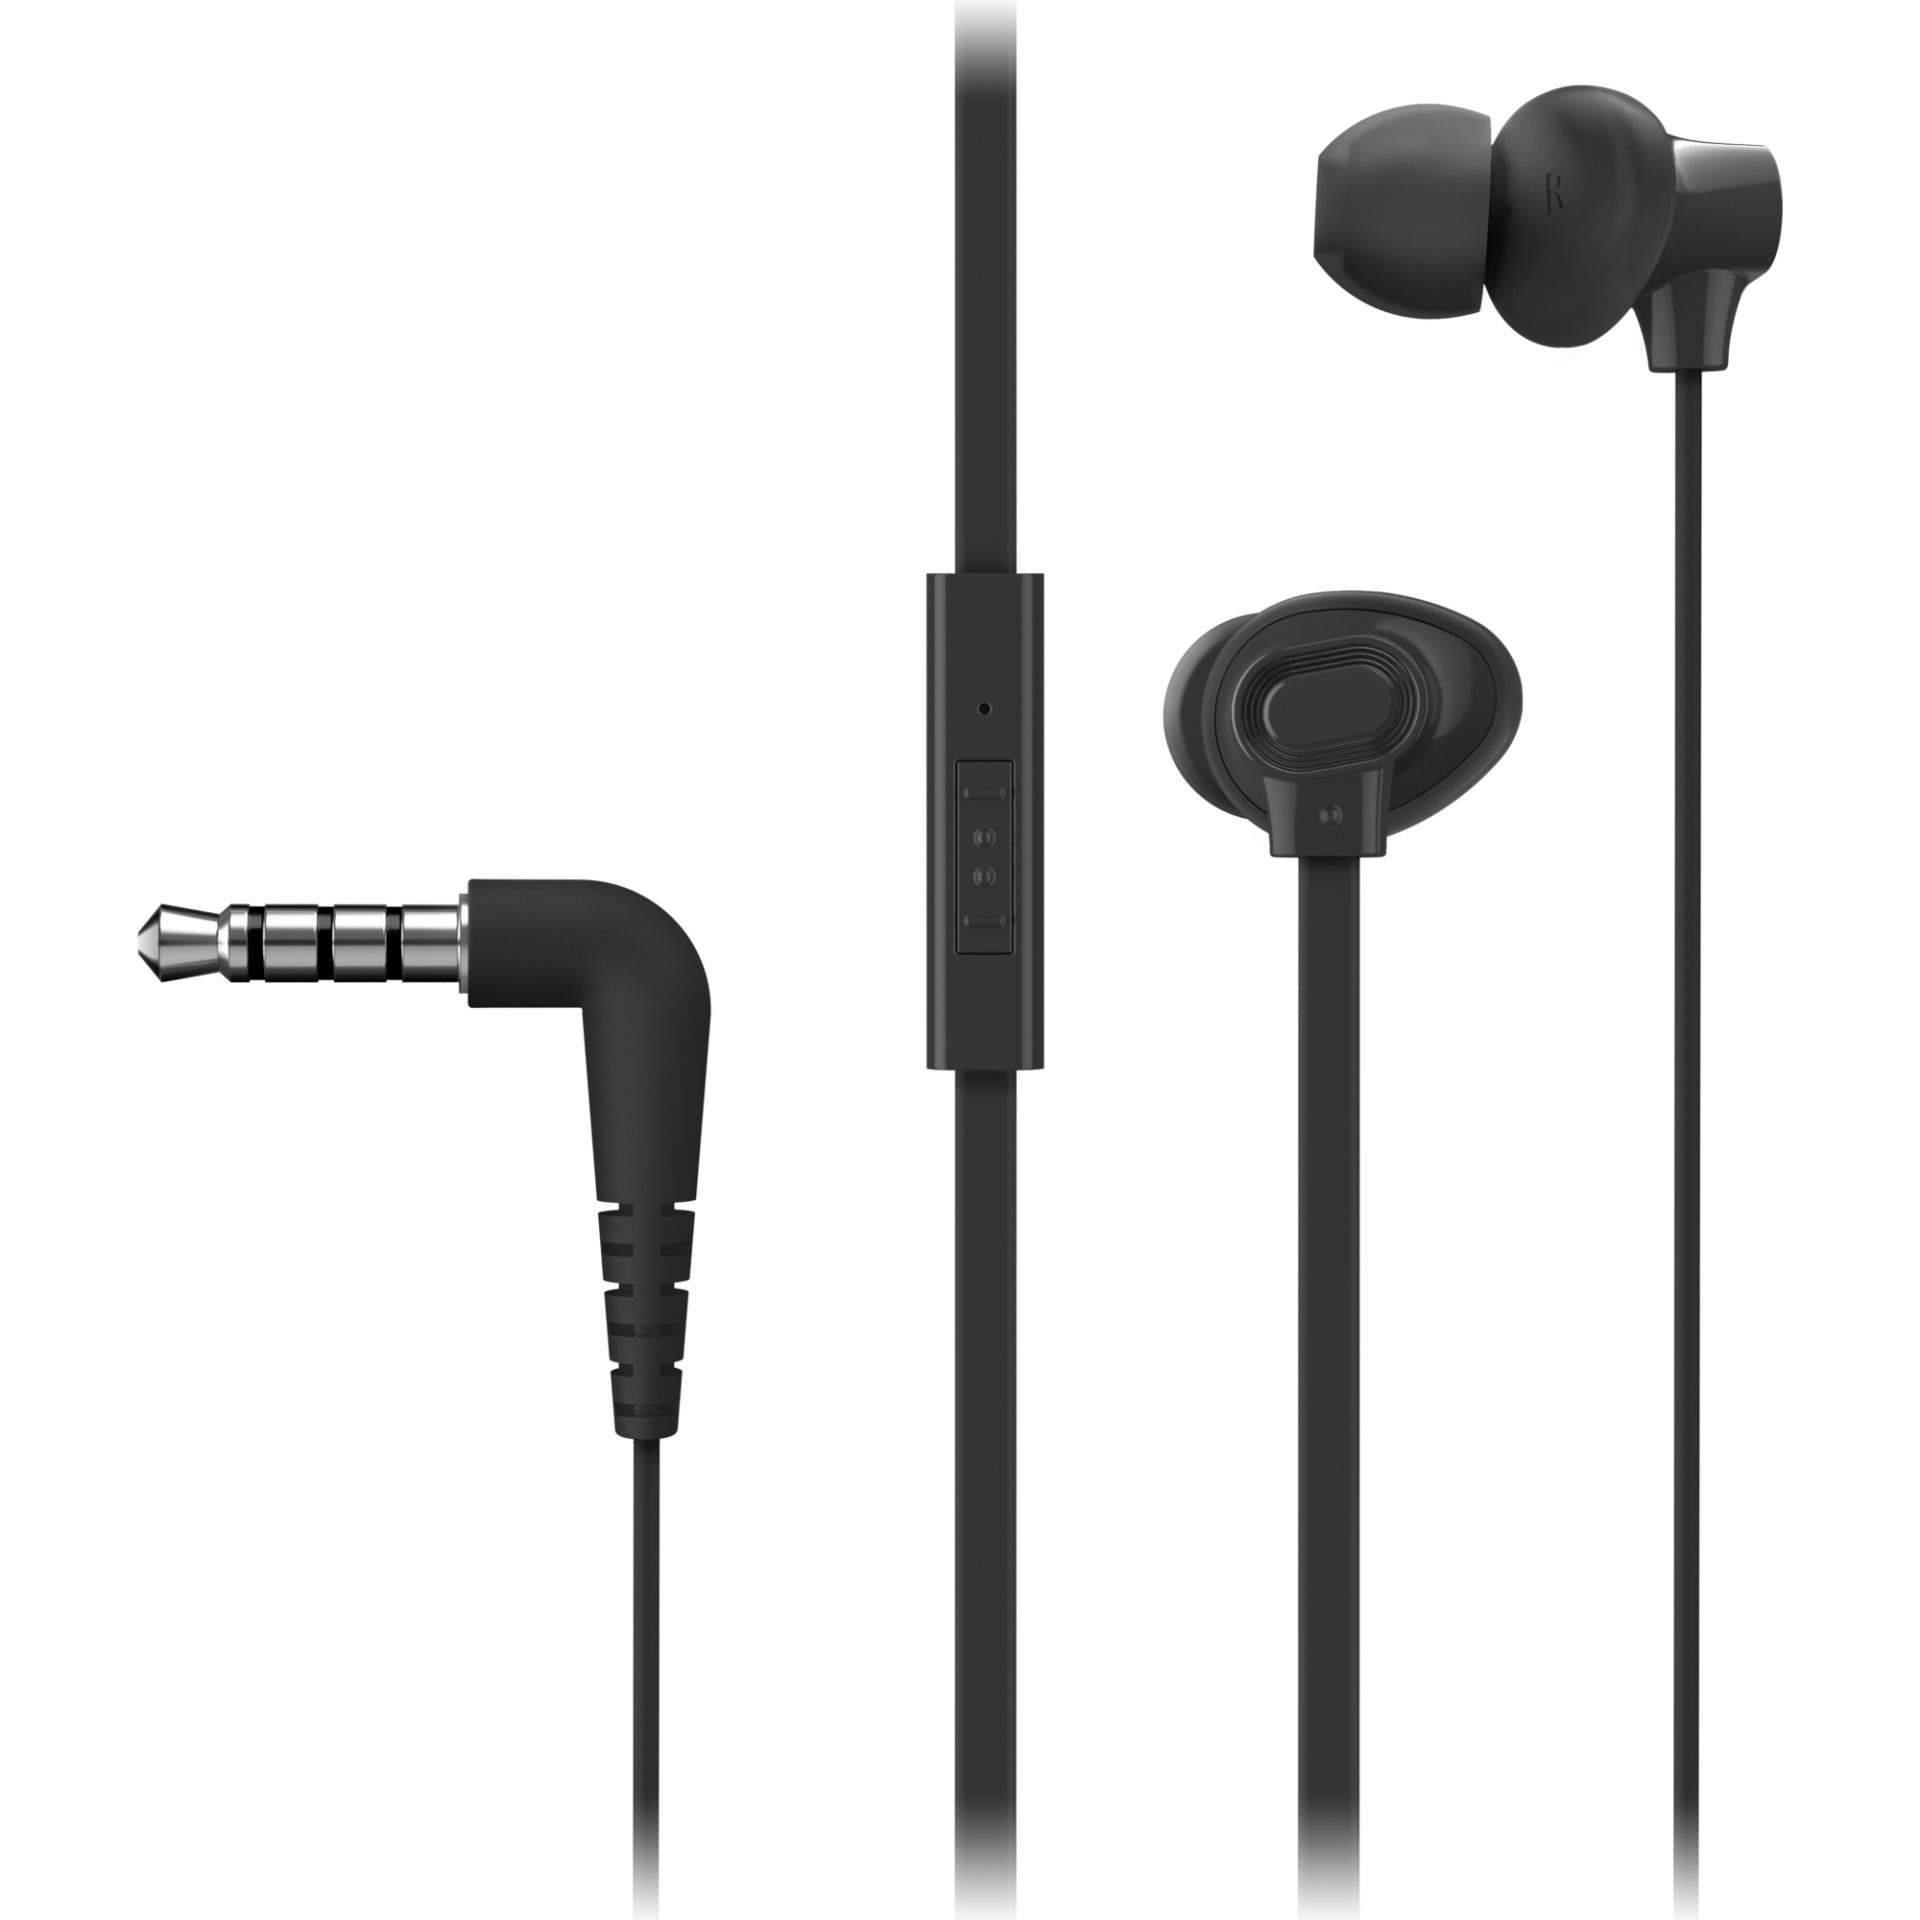 Panasonic RP-TCM130 sluchátka do uší (8,8mm měnič, bohaté basy, XBS systém, ERGOFIT PLUS, mikrofon a dálkové ovládání v kabelu), černá